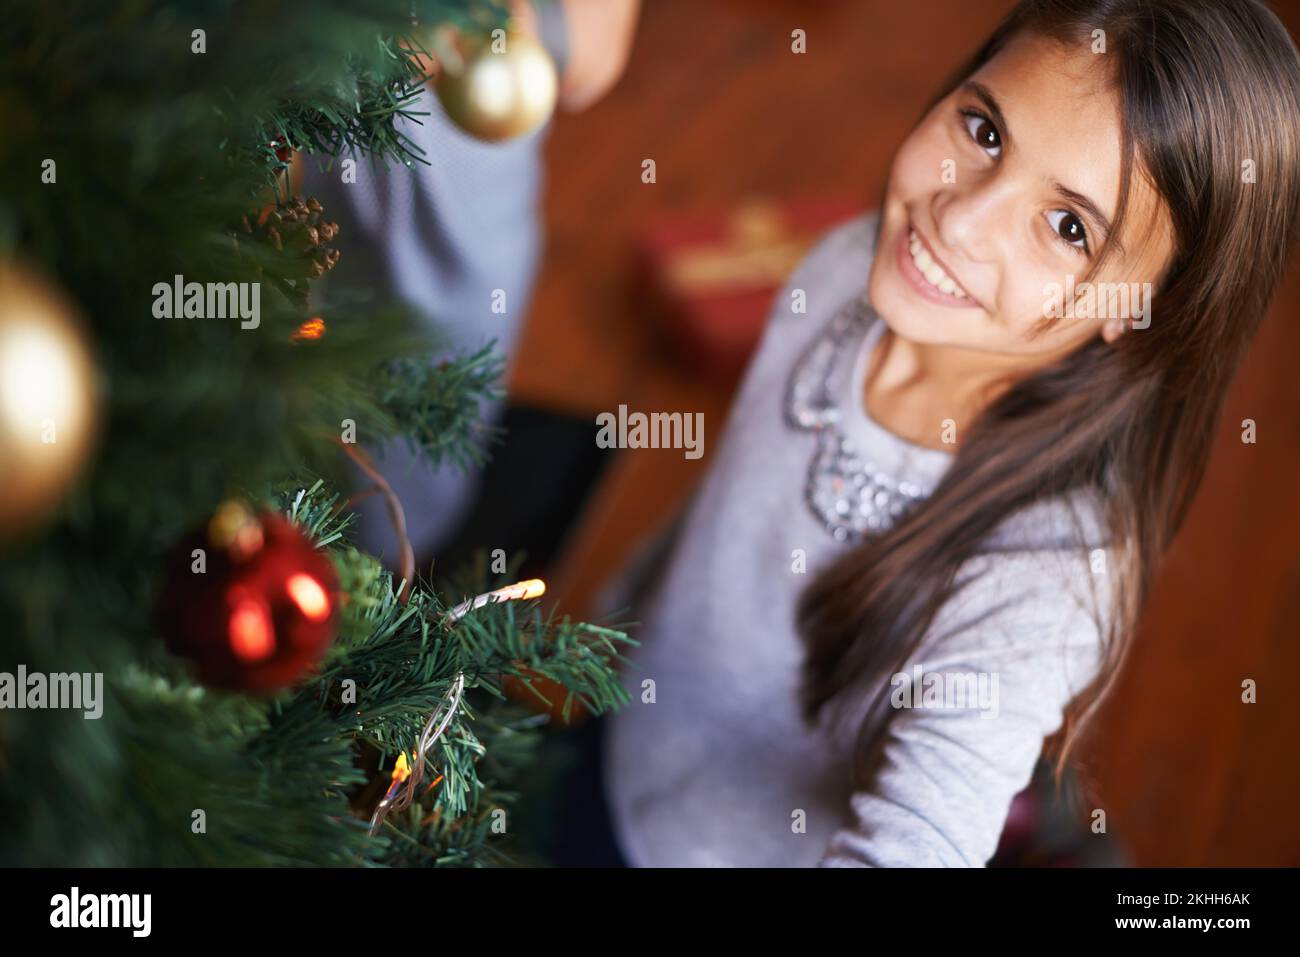 Rate mal, wer dieses Jahr dekoriert hat. Porträt eines kleinen Mädchens, das an einem weihnachtsbaum steht. Stockfoto